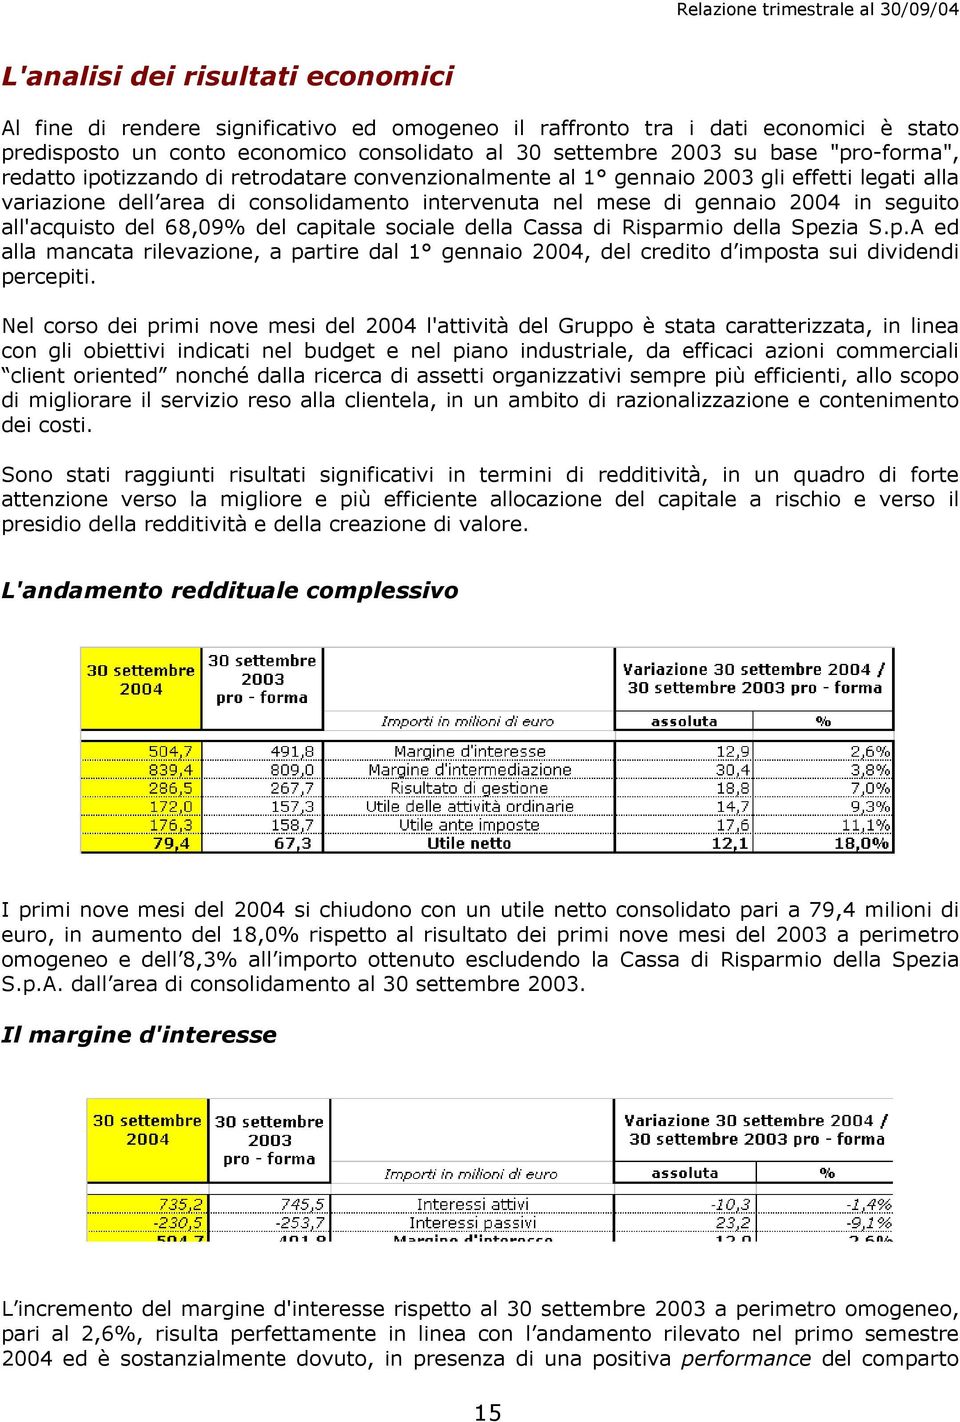 all'acquisto del 68,09% del capitale sociale della Cassa di Risparmio della Spezia S.p.A ed alla mancata rilevazione, a partire dal 1 gennaio 2004, del credito d imposta sui dividendi percepiti.